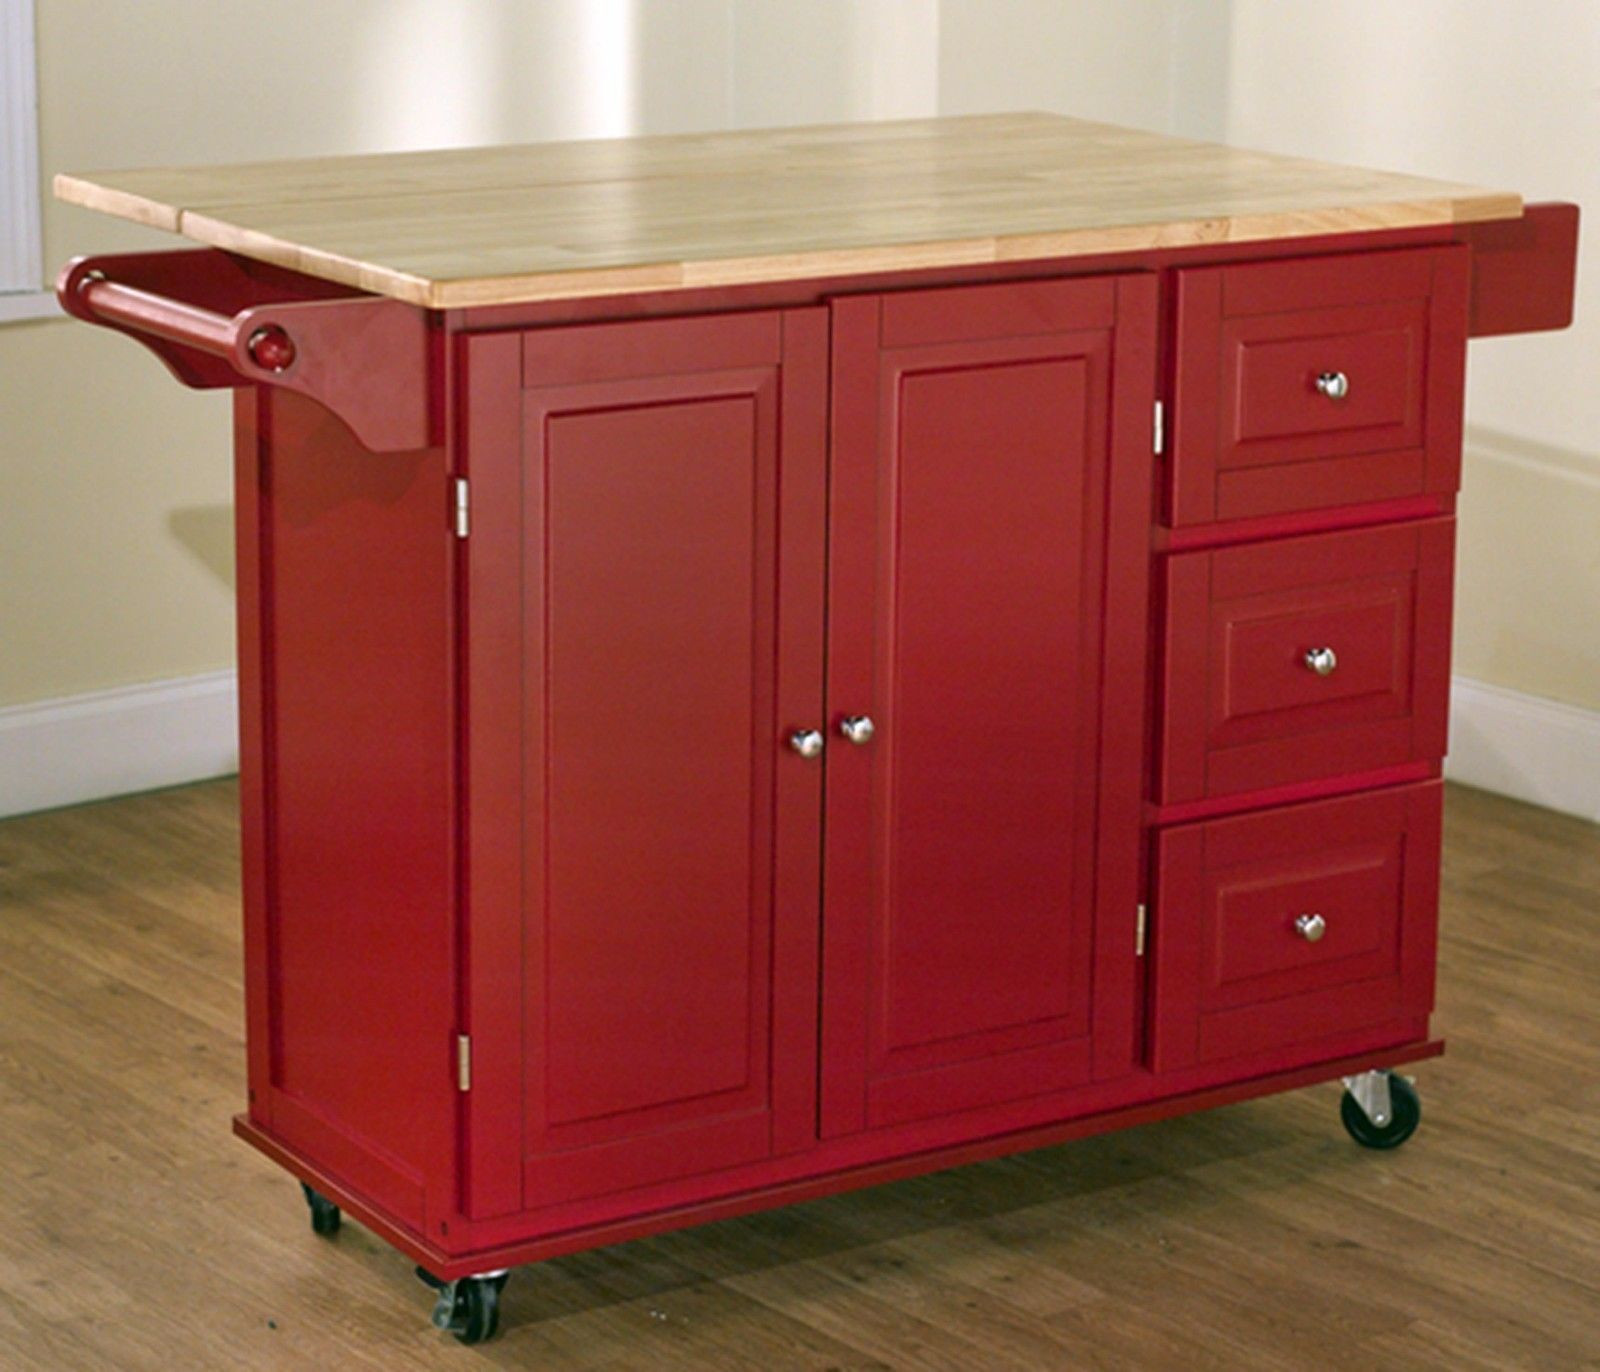 Red Kitchen Storage Cabinet
 Red Kitchen Cart Island Rolling Storage Cabinet Wood